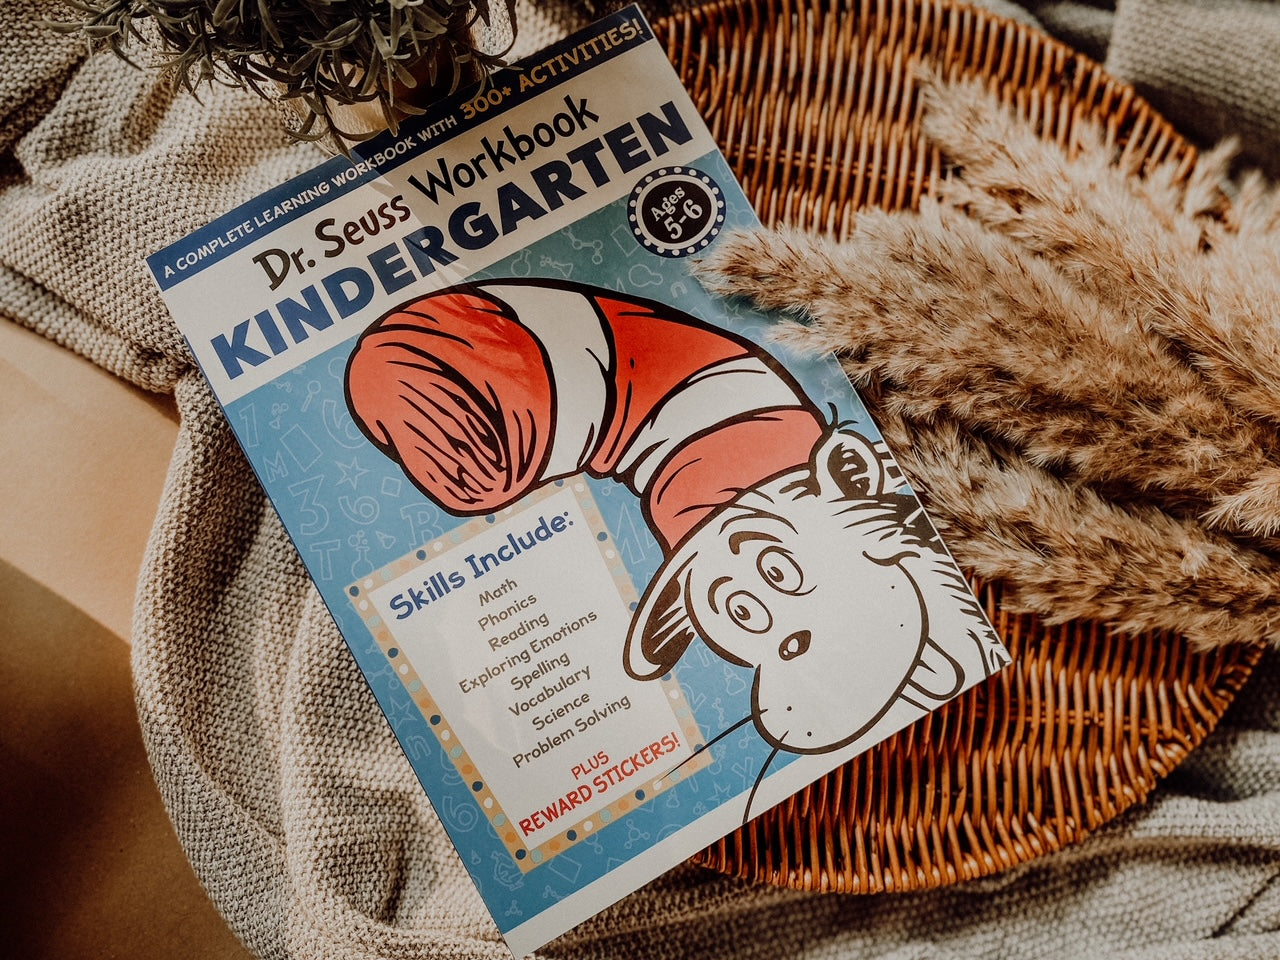 Dr. Seuss Kindergarten Workbook: 300+ Fun Activities with Stickers and More!